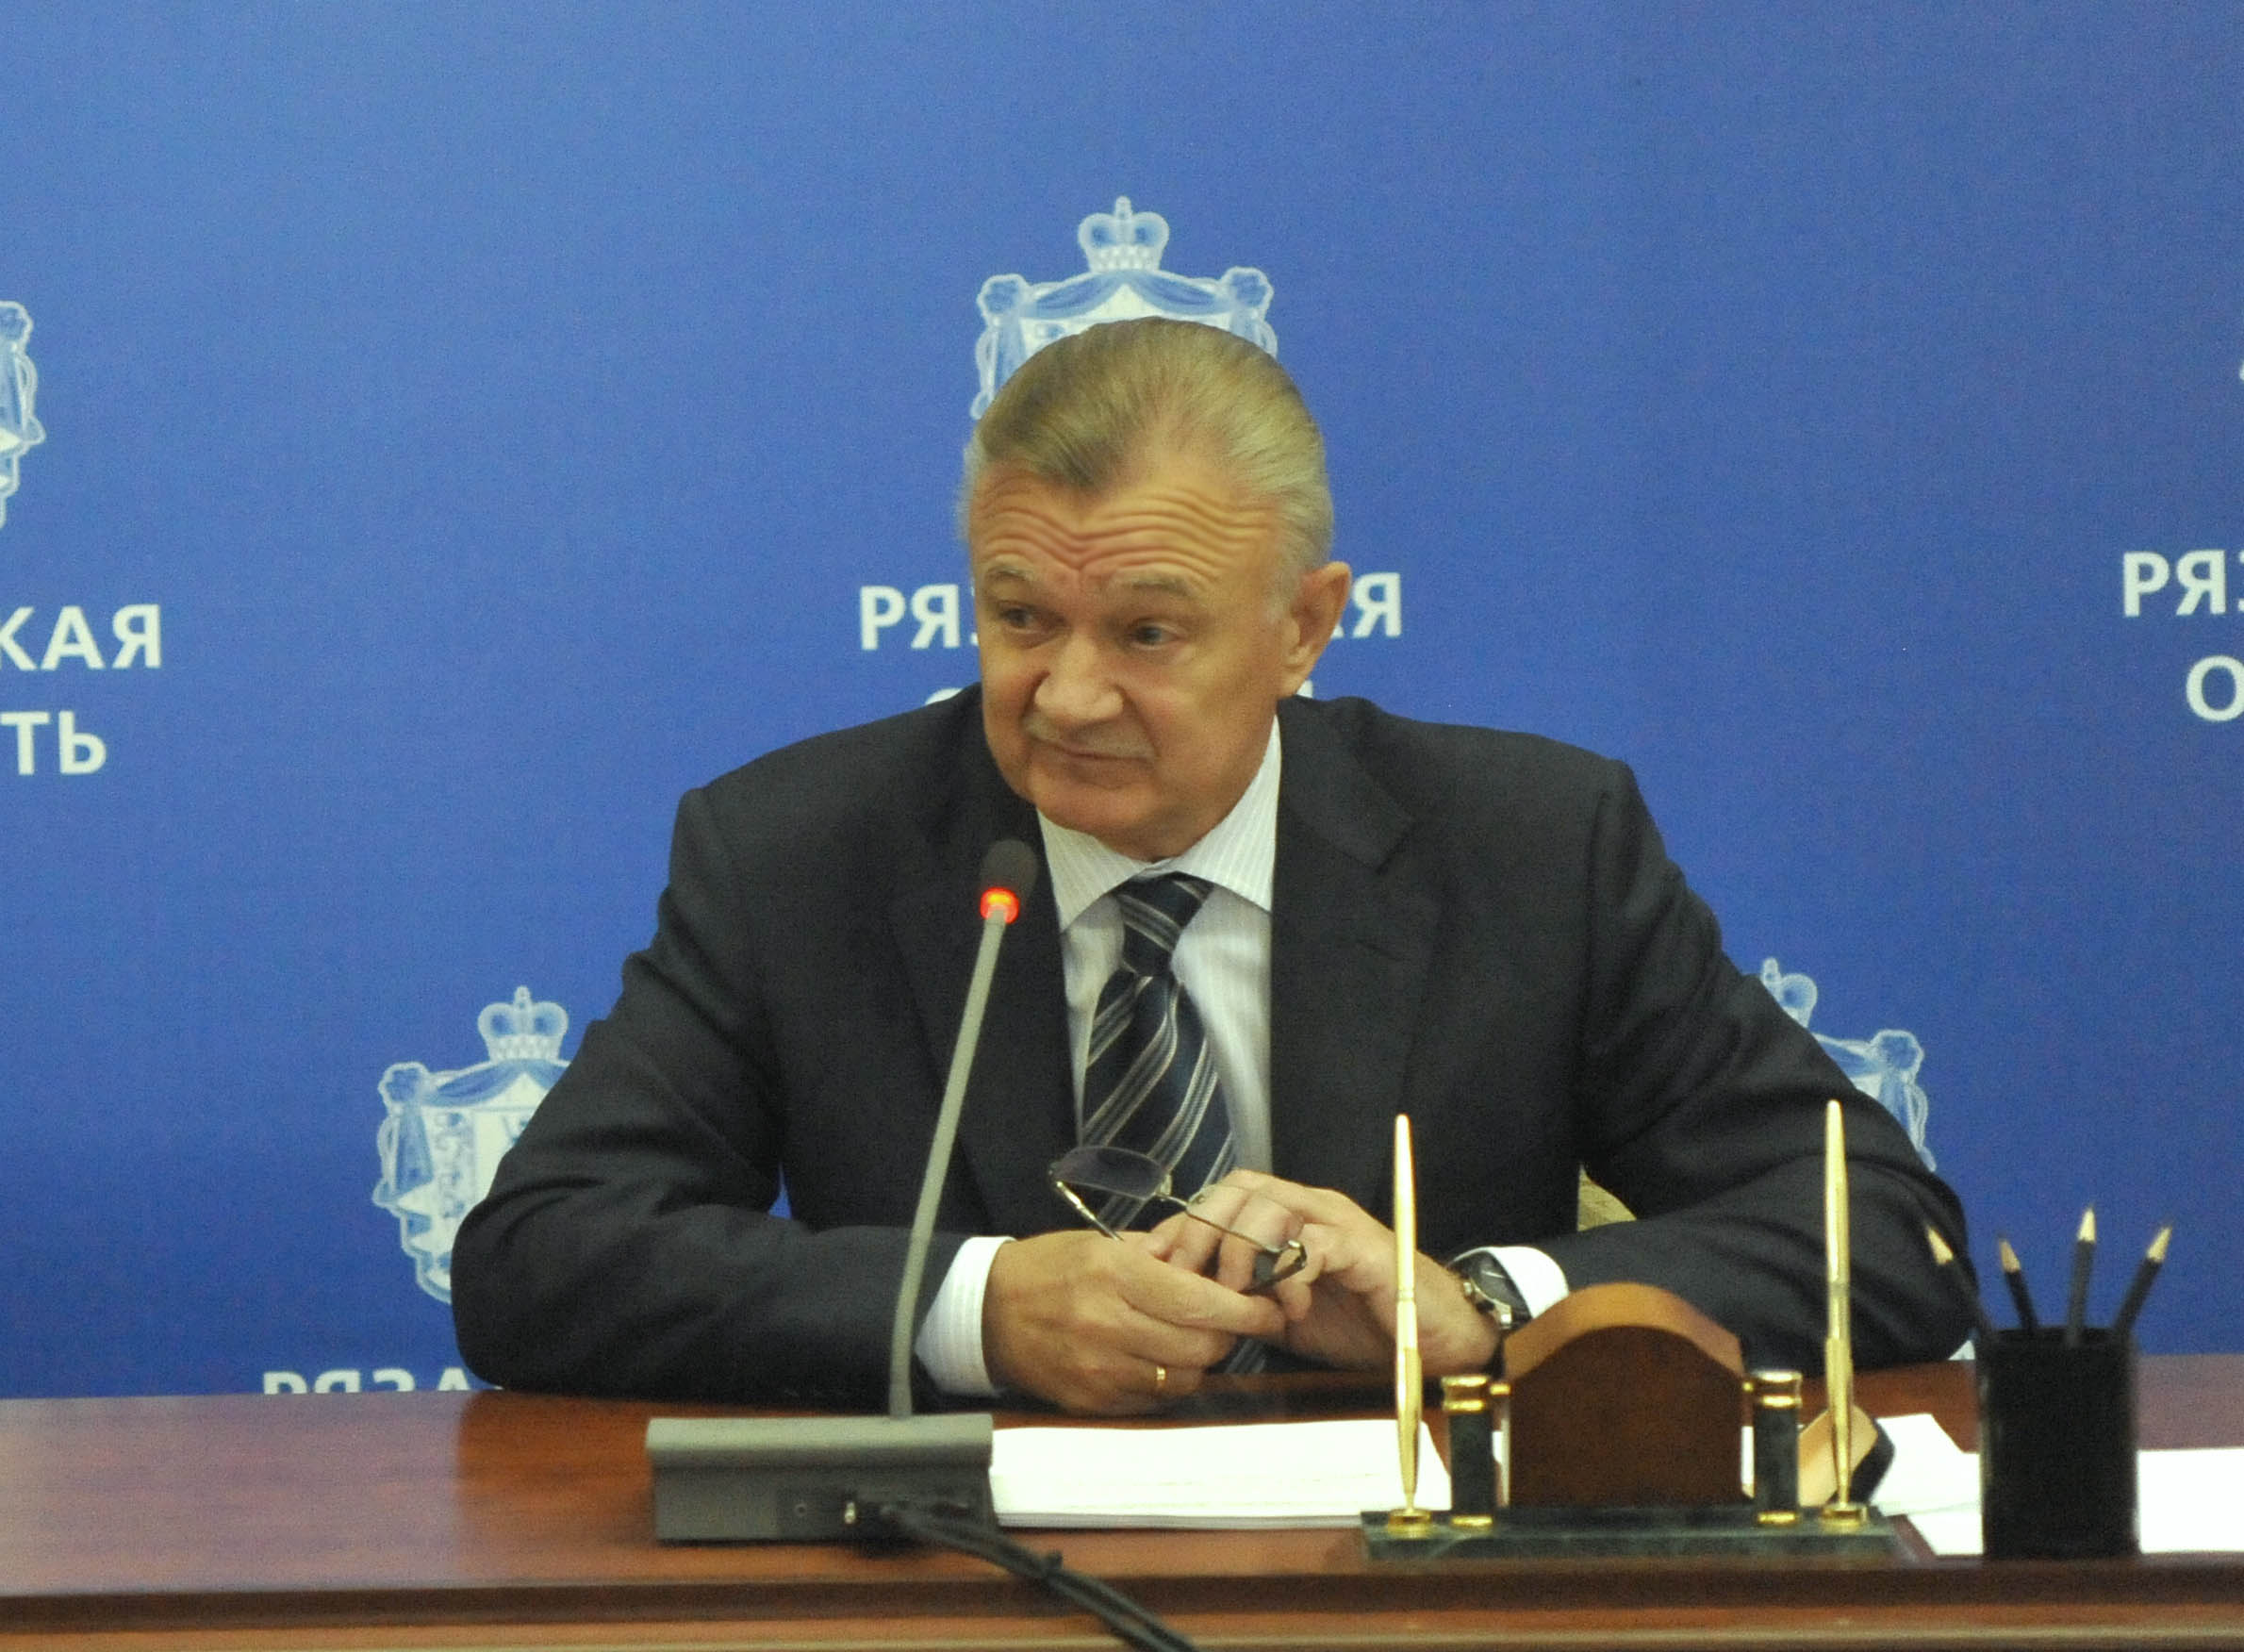 Губернатор Олег Ковалев: «Проверка случая в с. Истье должна быть проведена объективно и нетенденциозно»